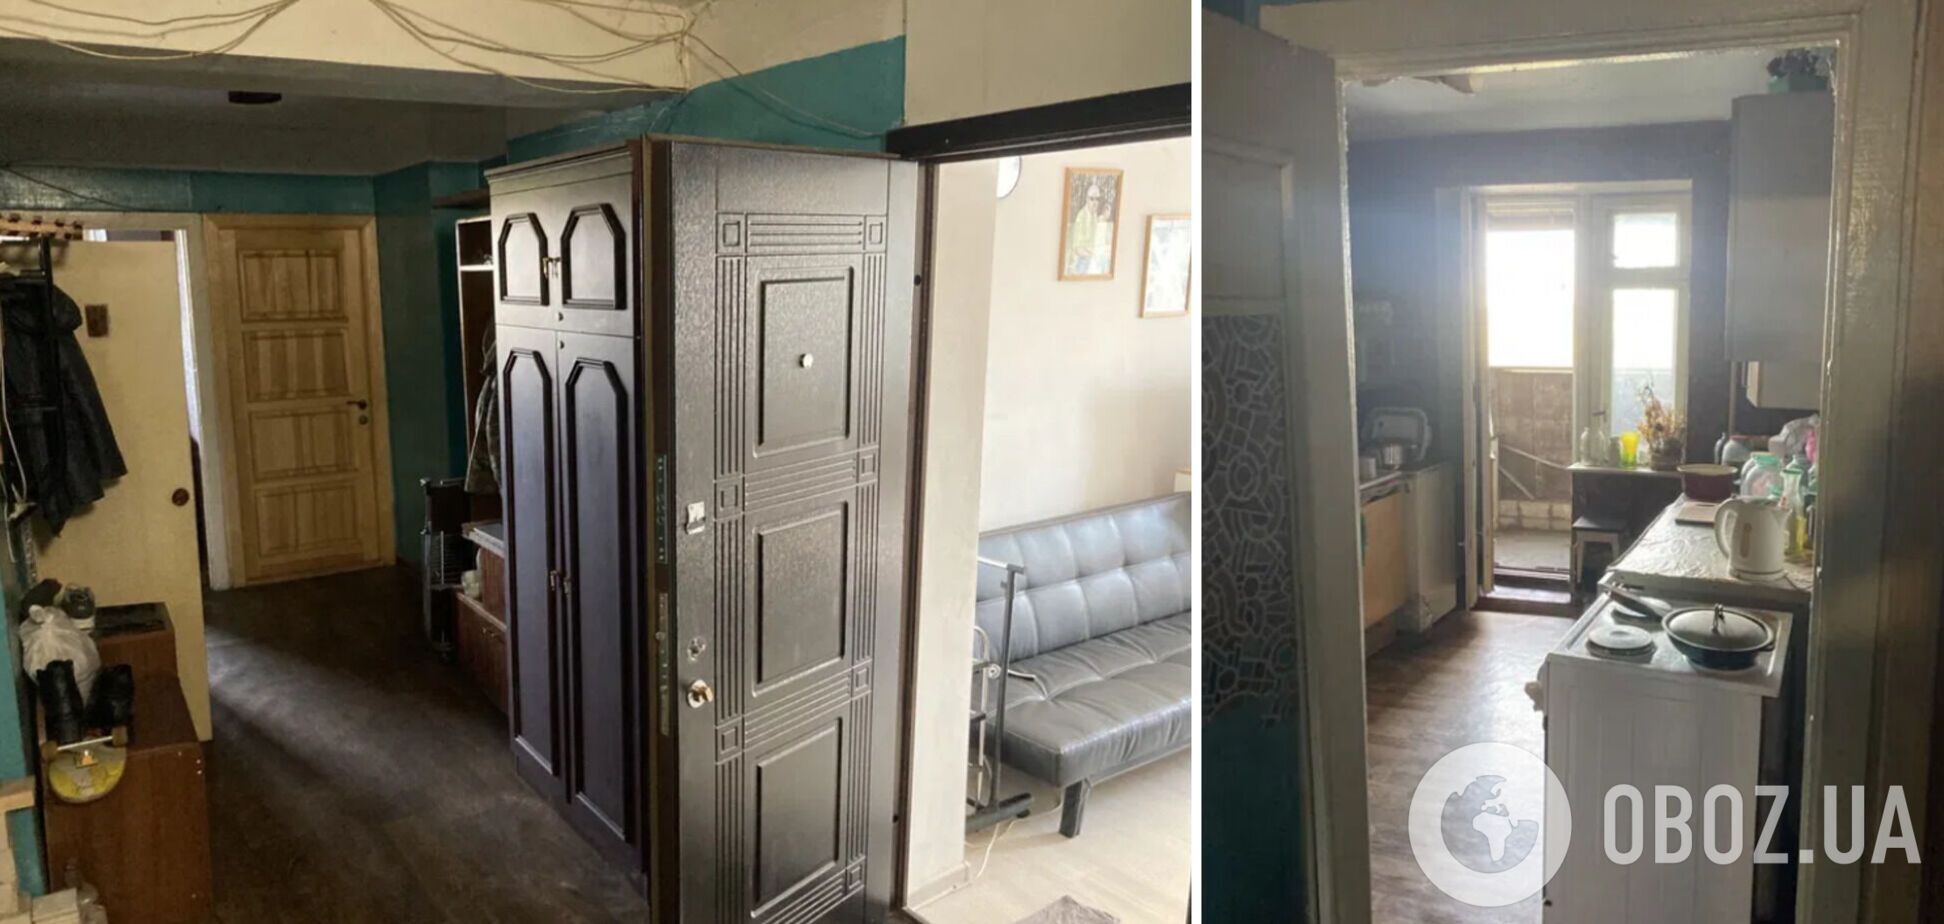 В Киеве 'квадрат' комнаты в общежитии оценили дороже, чем в полноценной квартире